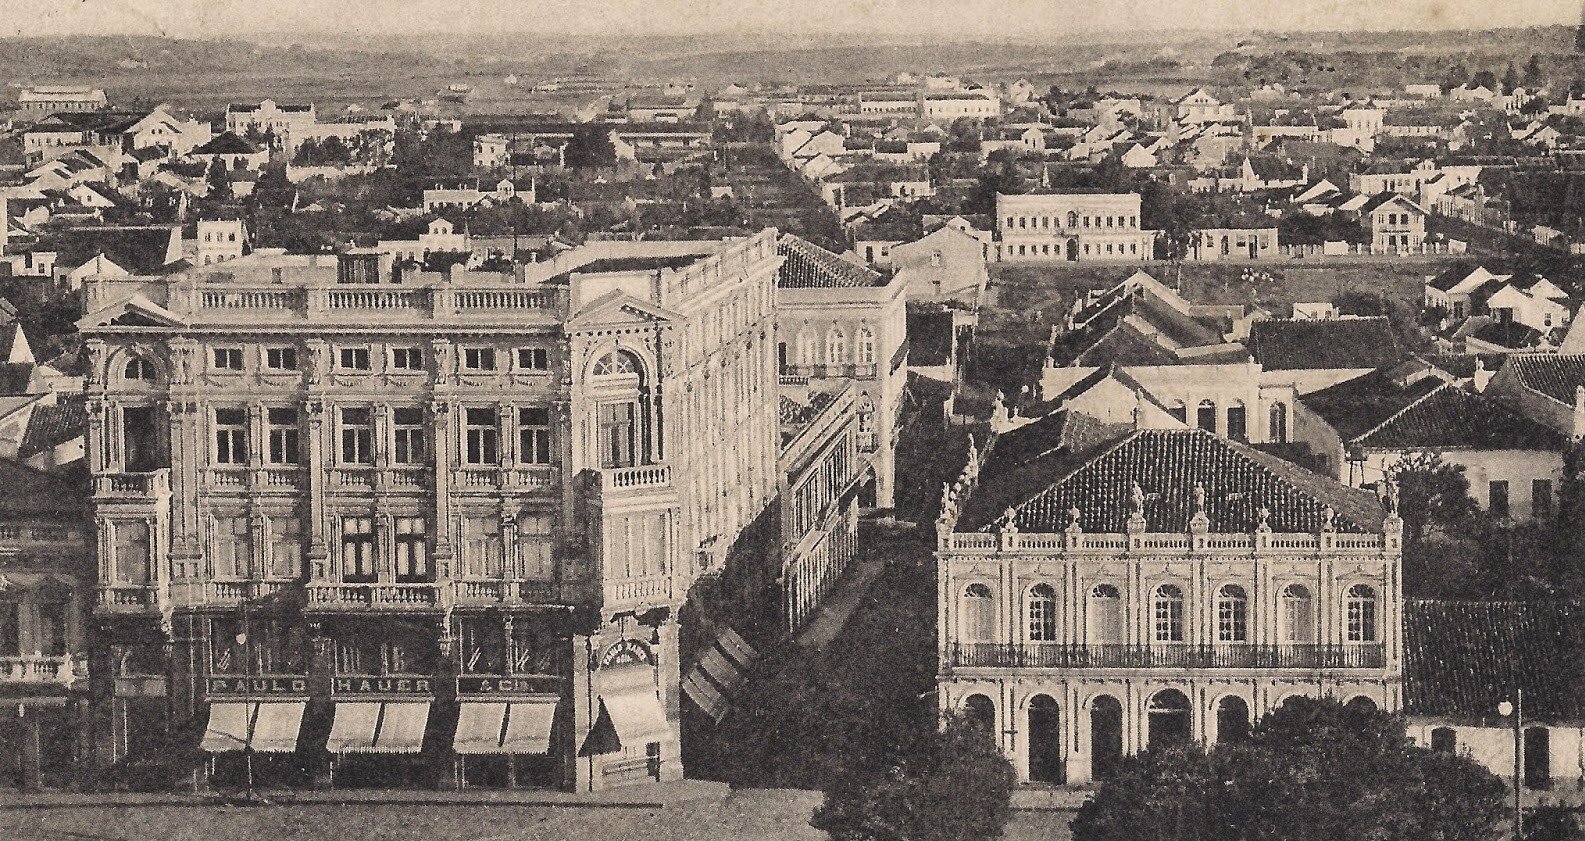 Palacete de Paulo Hauer & Cia, rua 1º de Março – 1905